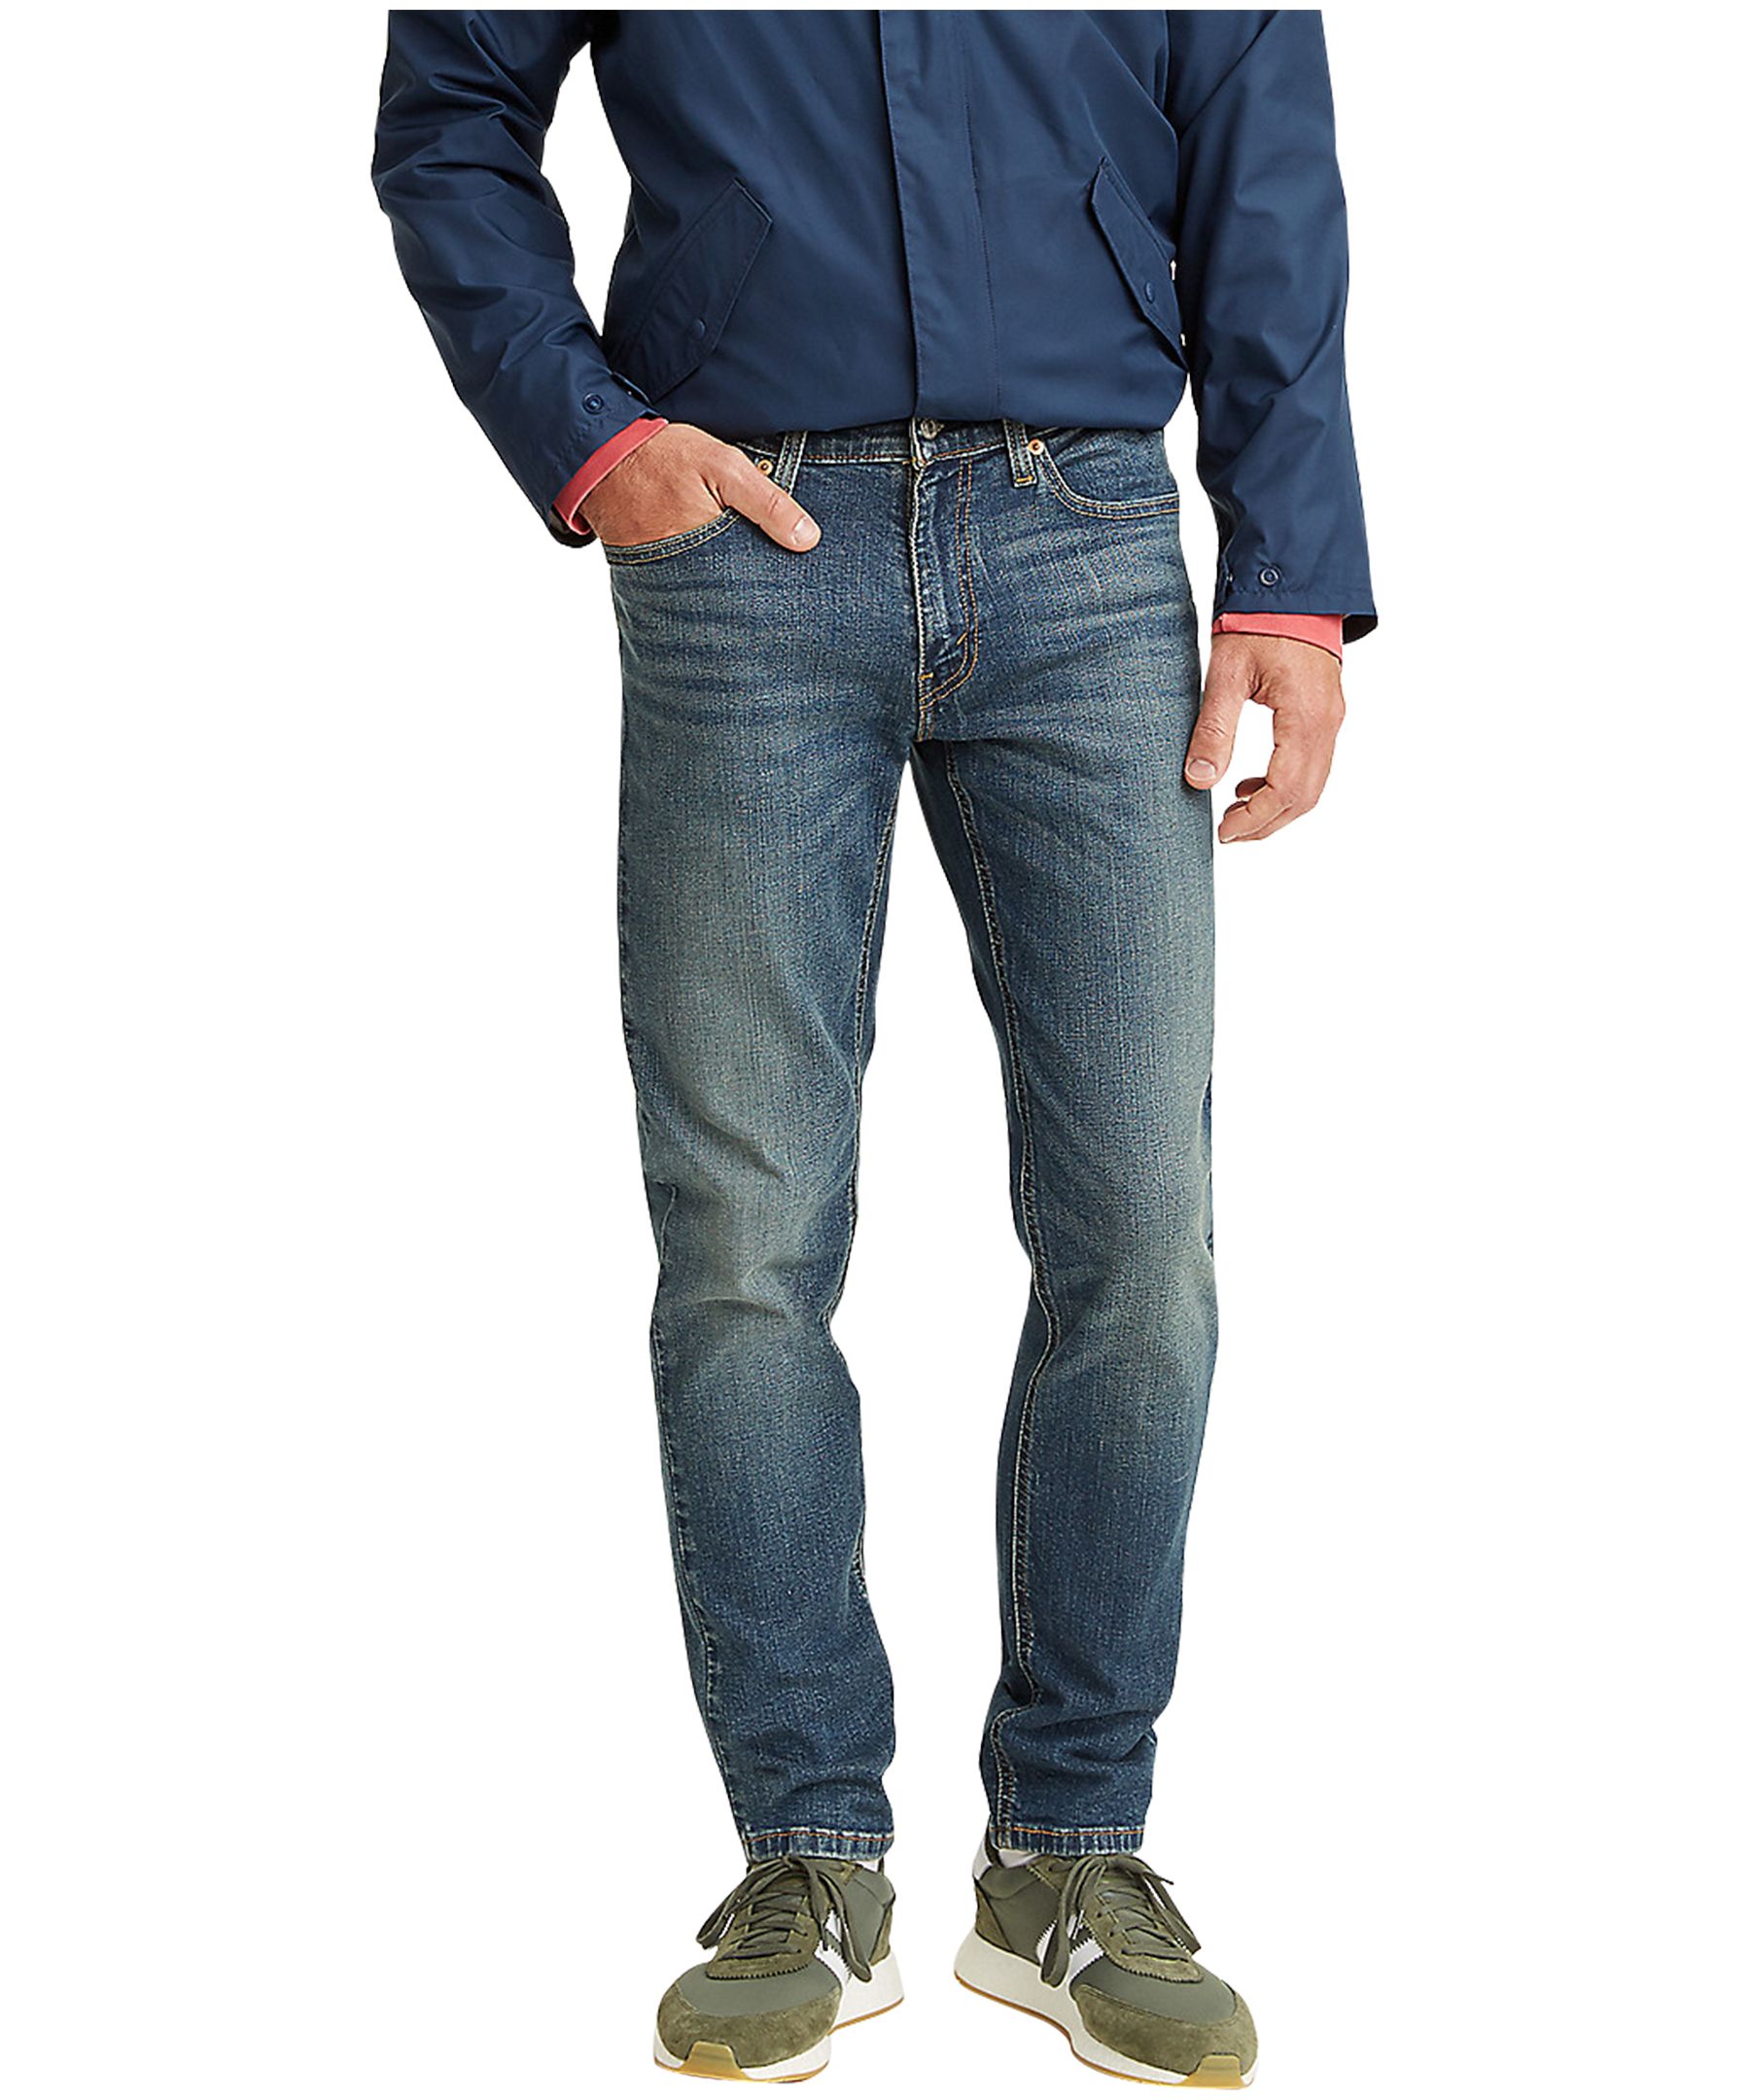 Men's 531 Athletic Slim Fit Jeans - Medium Wash